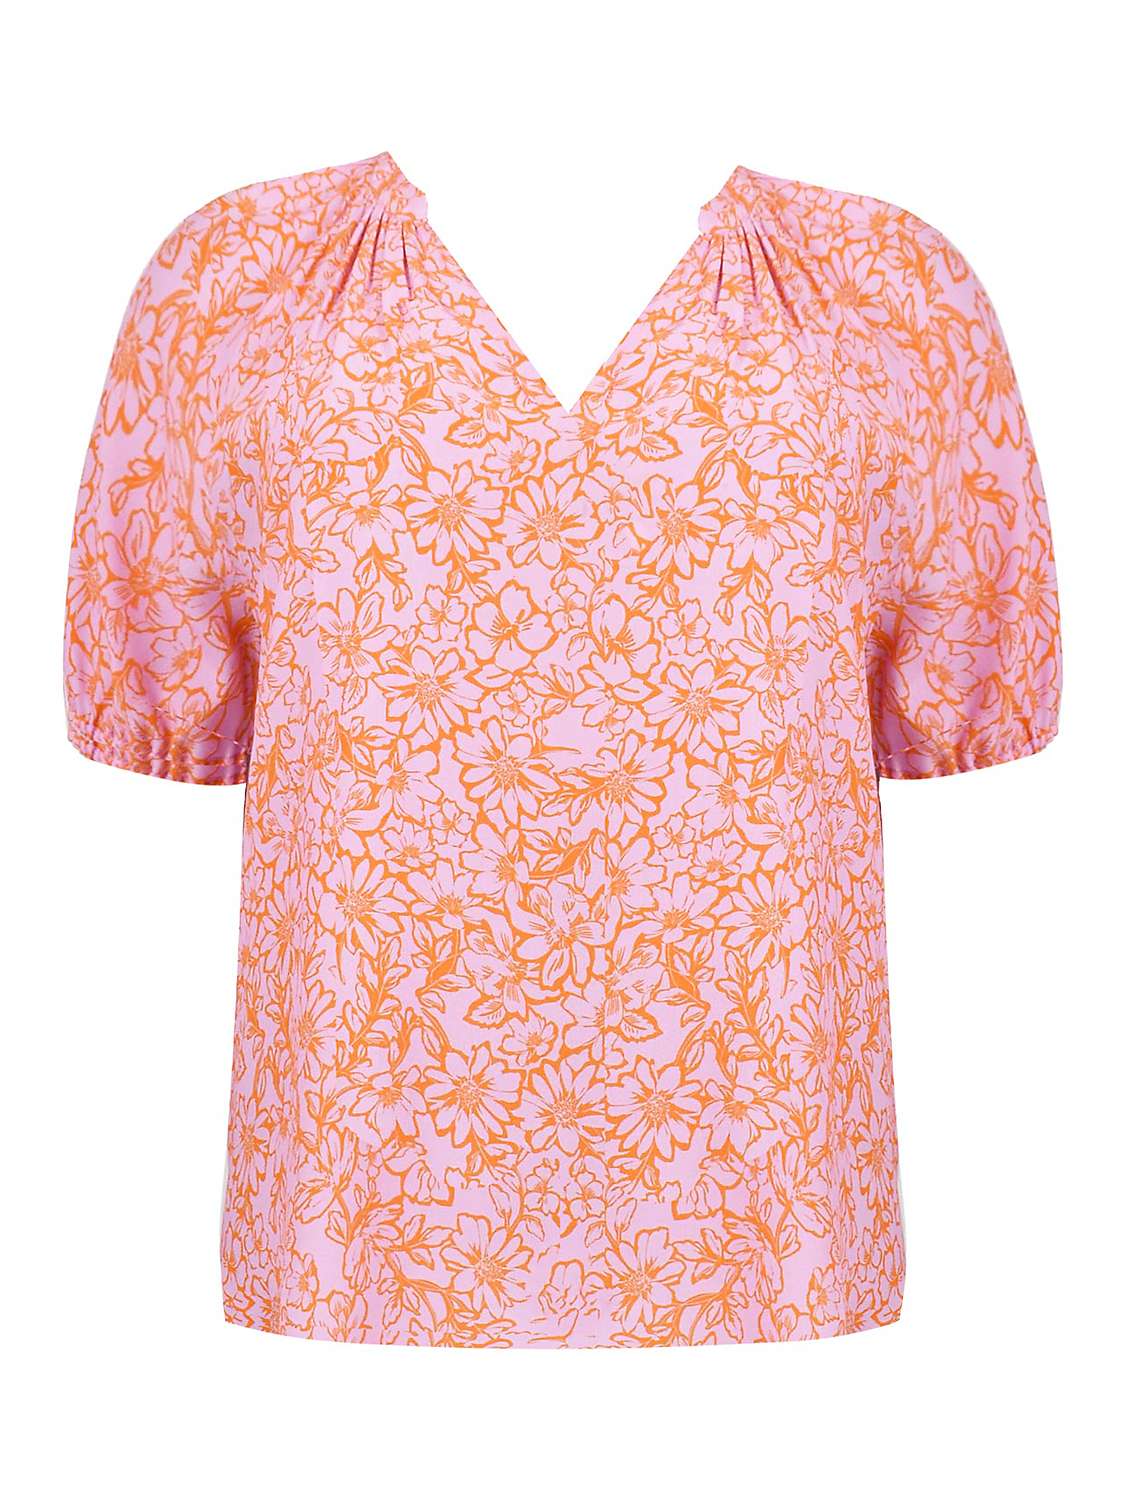 Buy Live Unlimited Curve Linear Floral Short Sleeve Blouse, Orange/Pink Online at johnlewis.com